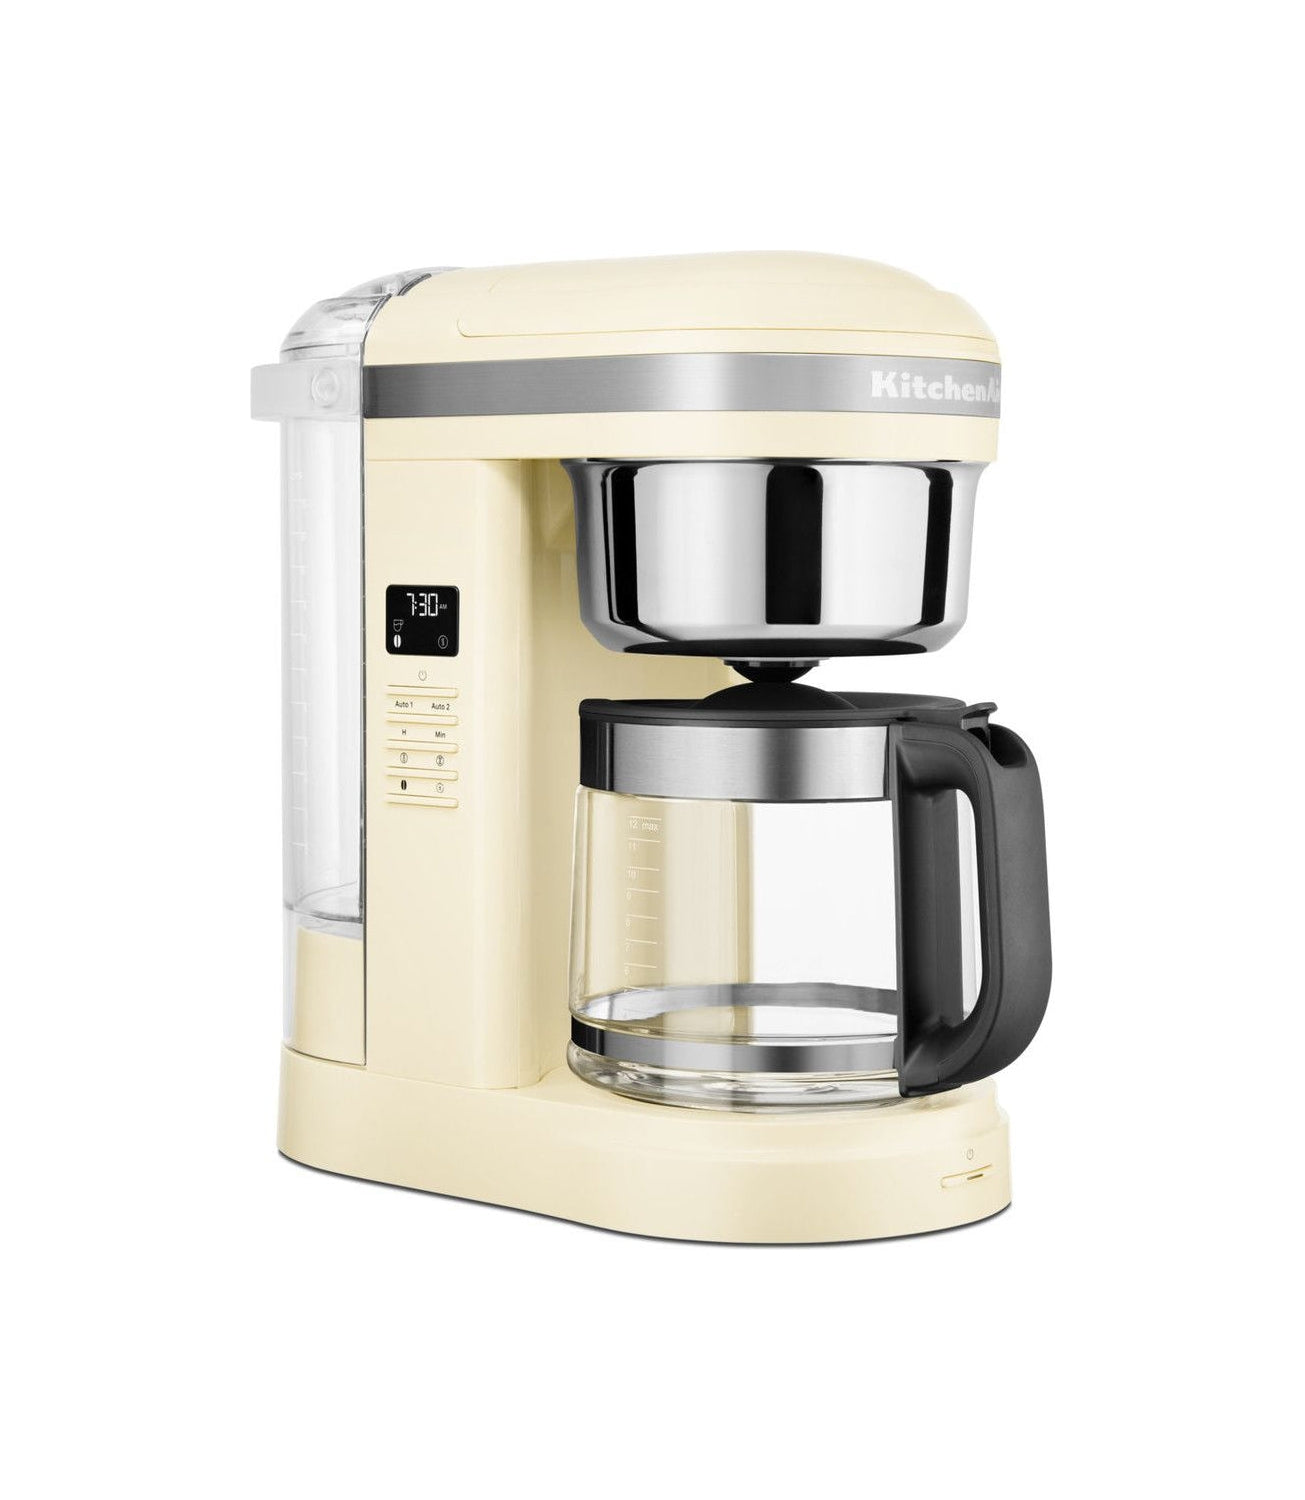 Køkkenhjælp 5 KCM1209 Filterkaffemaskine 1,7 L, Crème